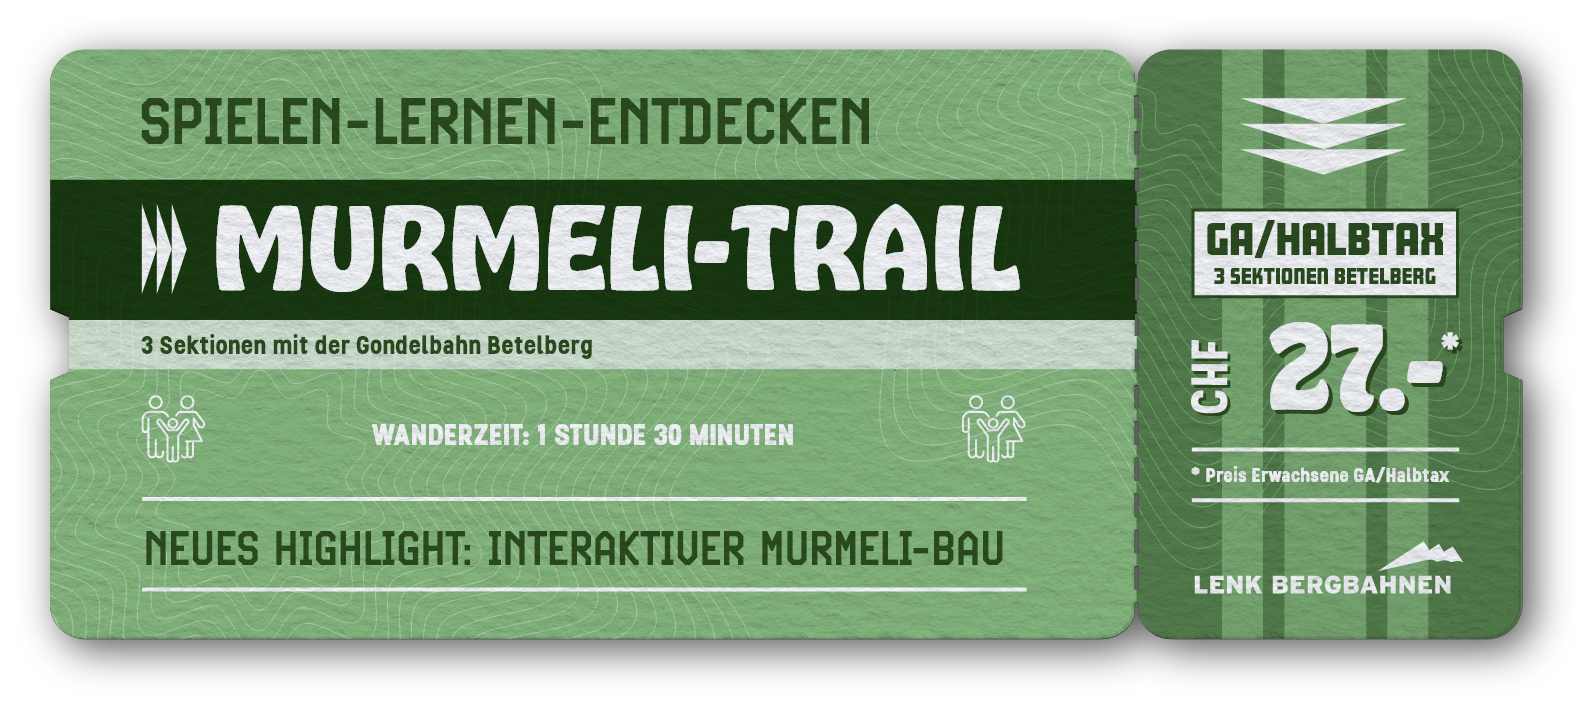 Ticket Murmeli-Trail 3 Sektionen